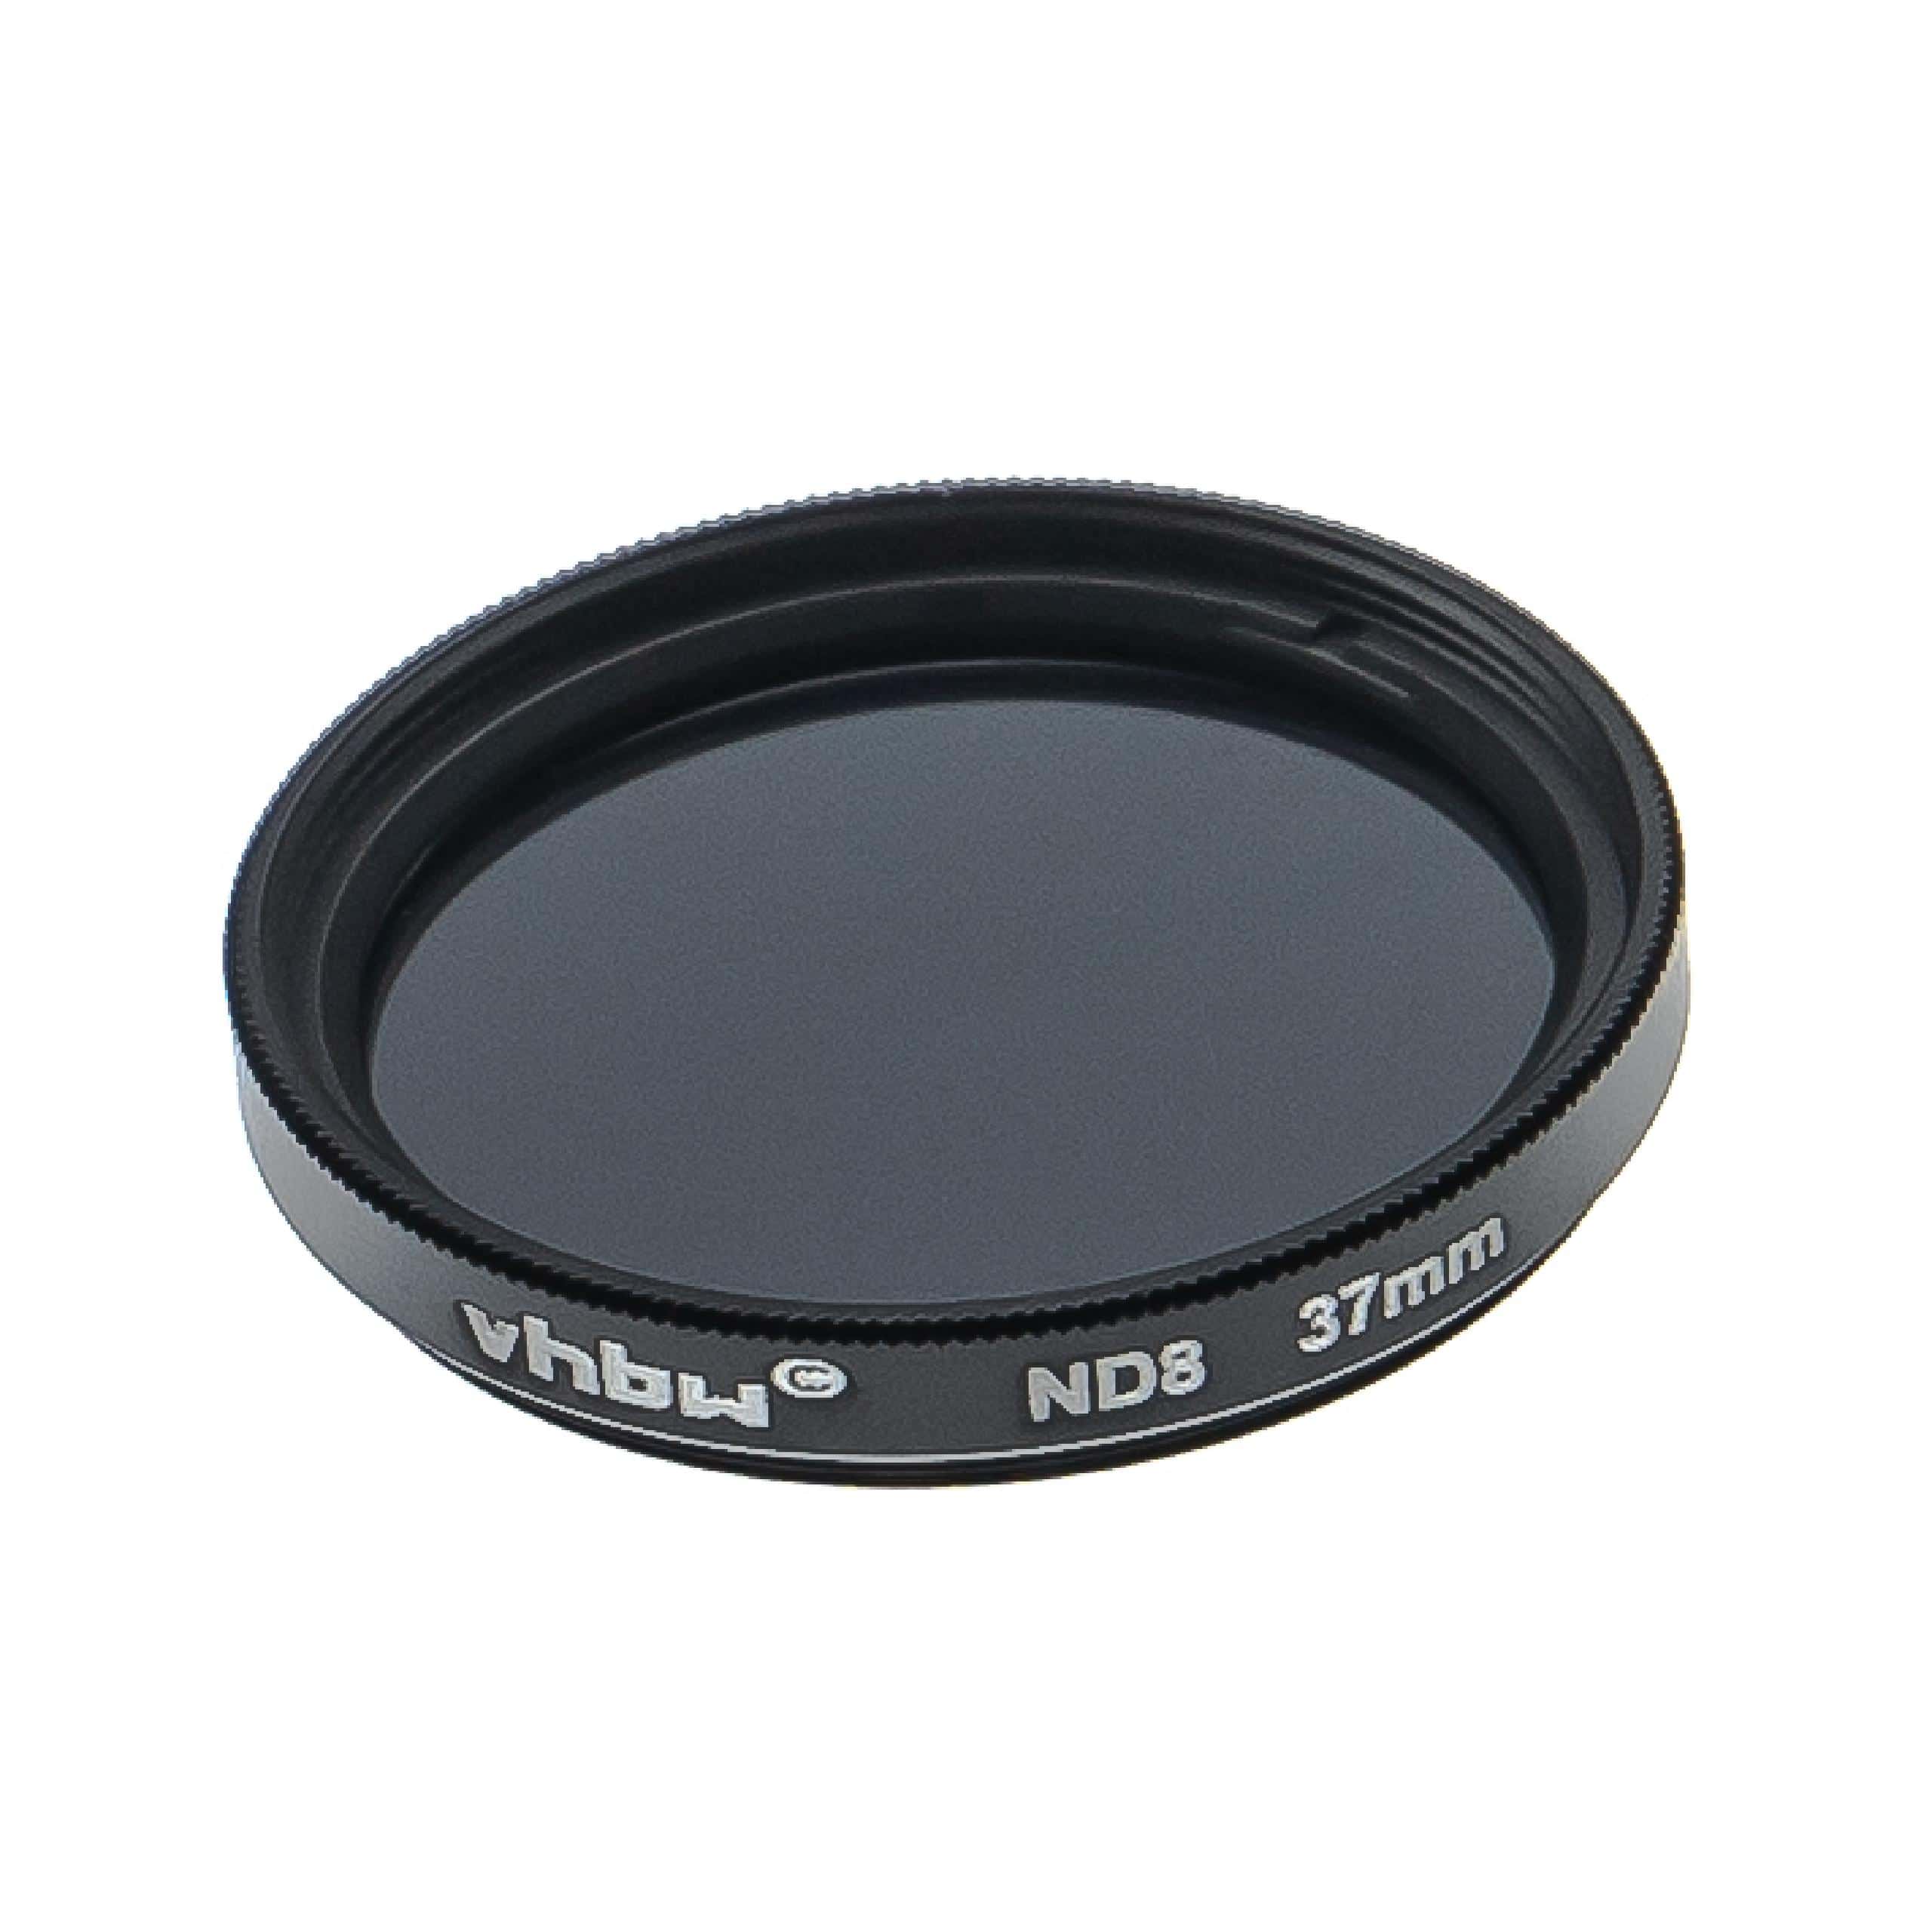 Filtro ND universal ND 8 para objetivos de cámara con rosca de filtro de 37 mm - Filtro gris